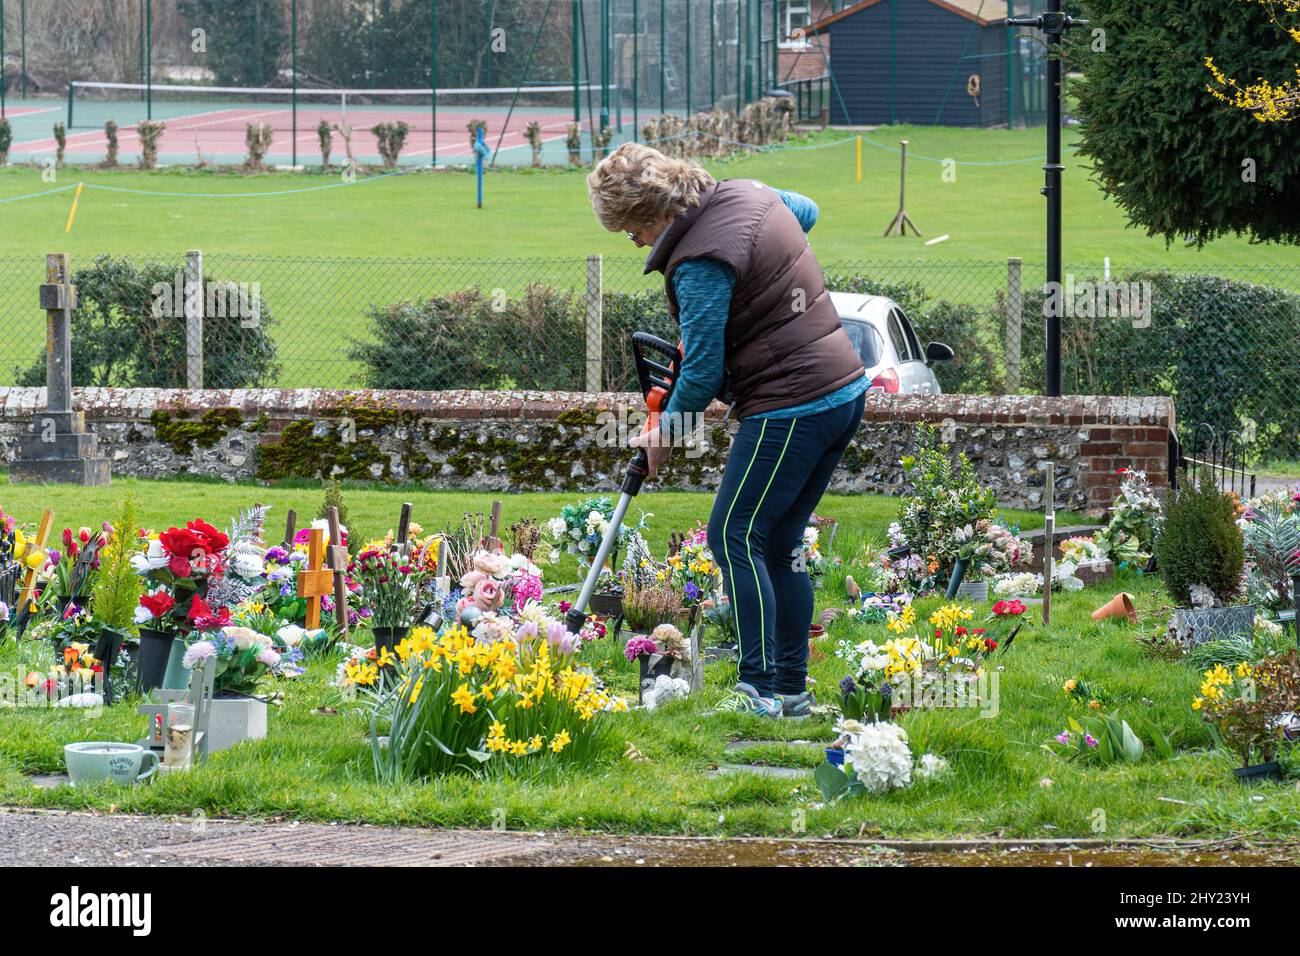 Femme rayonnant de longues herbes autour des fleurs dans un chantier de curriculture, en train de laterrer, Hampshire, Angleterre, Royaume-Uni Banque D'Images